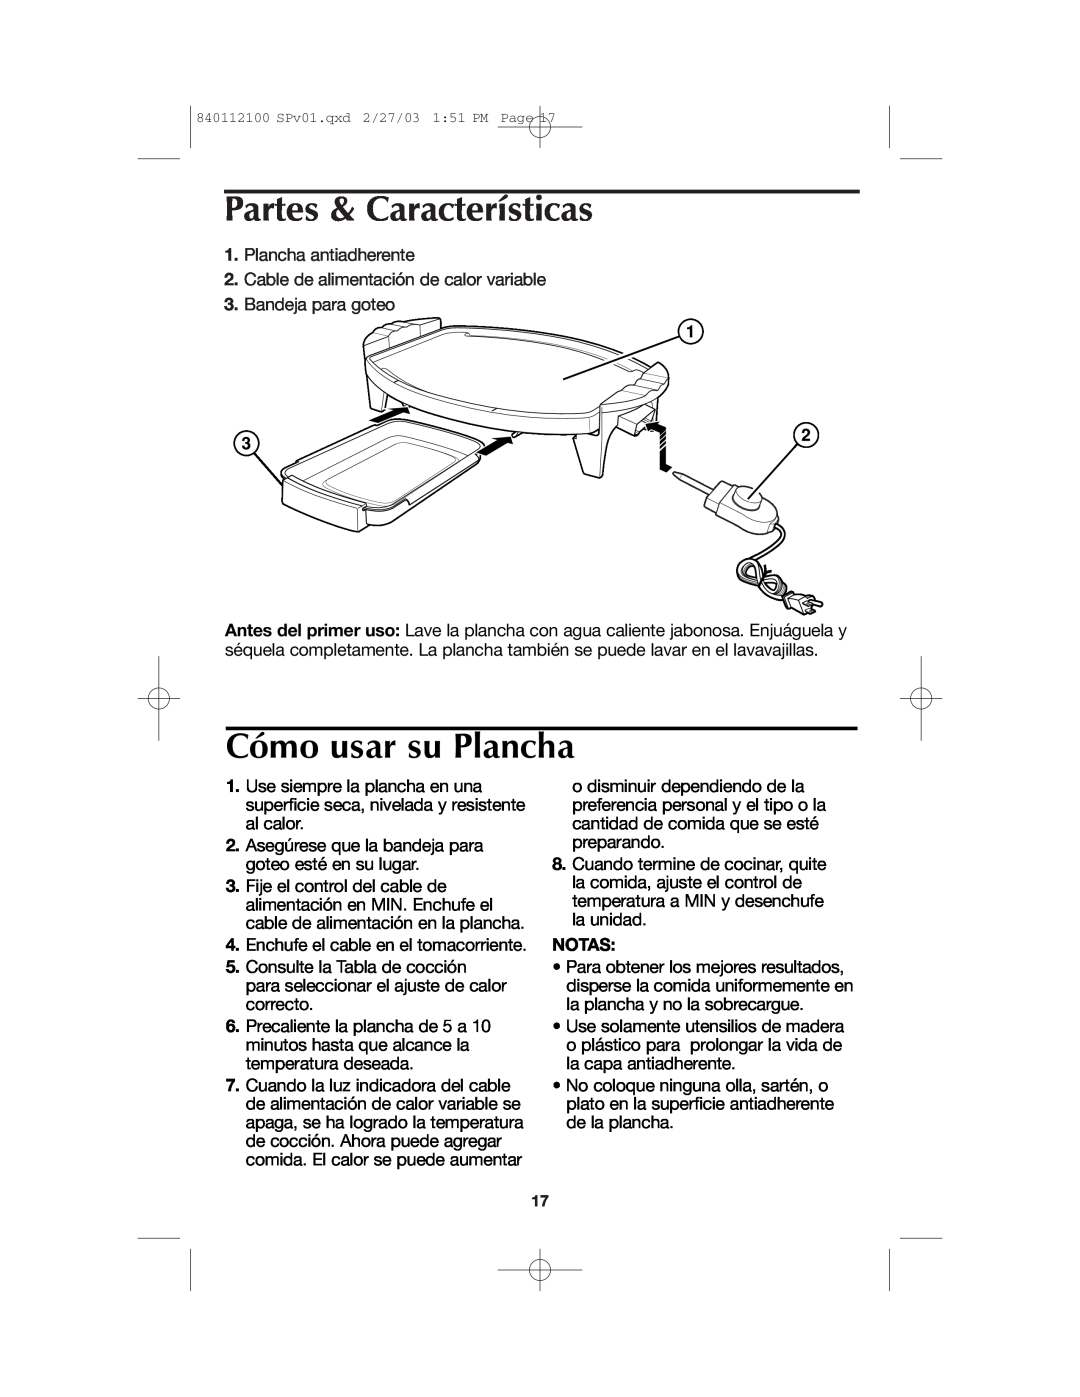 Proctor-Silex 840112100 manual Partes & Características, Cómo usar su Plancha, Notas 